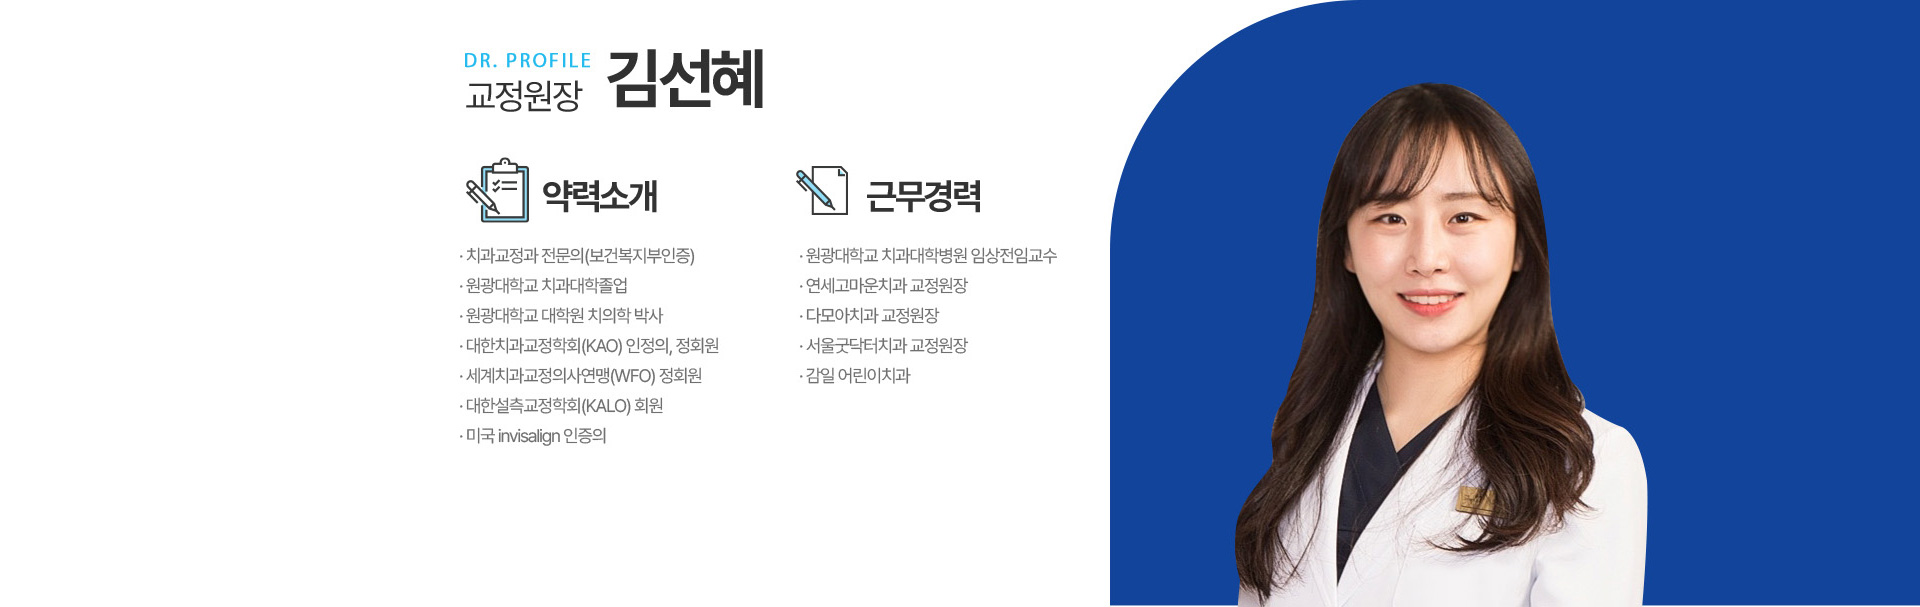 대표원장 김선혜